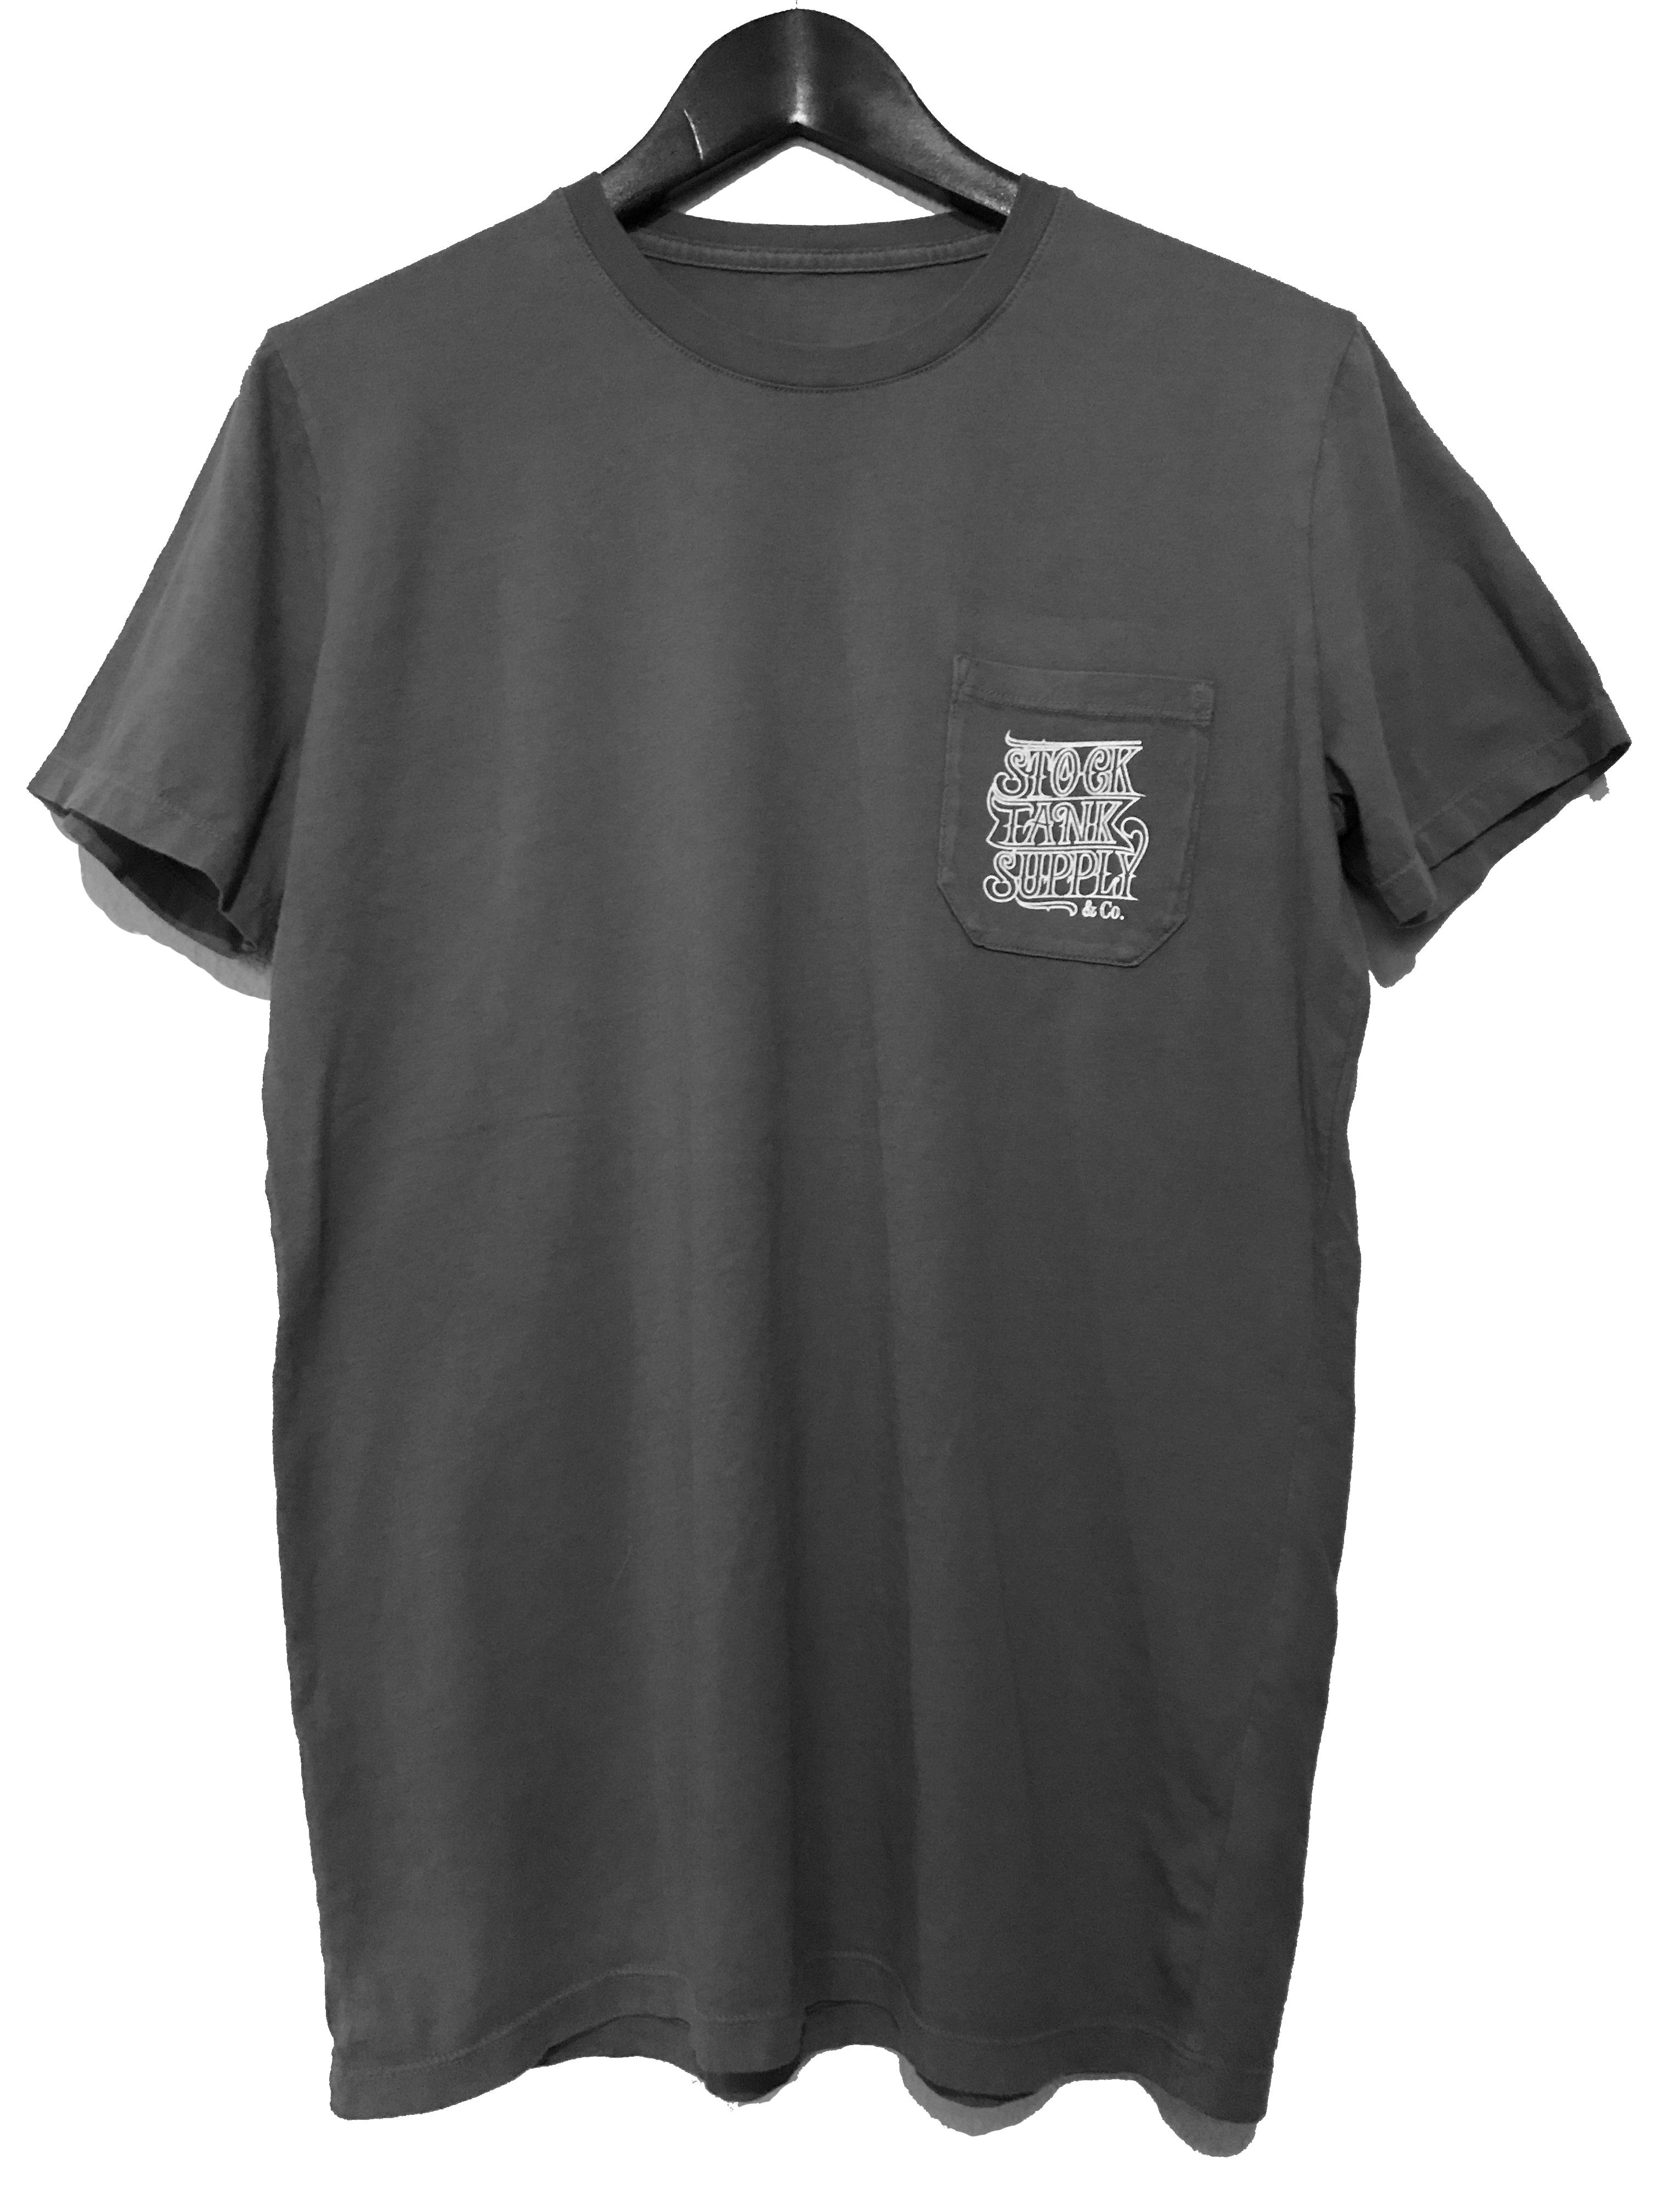 Company Shirts '17 | Lot 2 - Charcoal